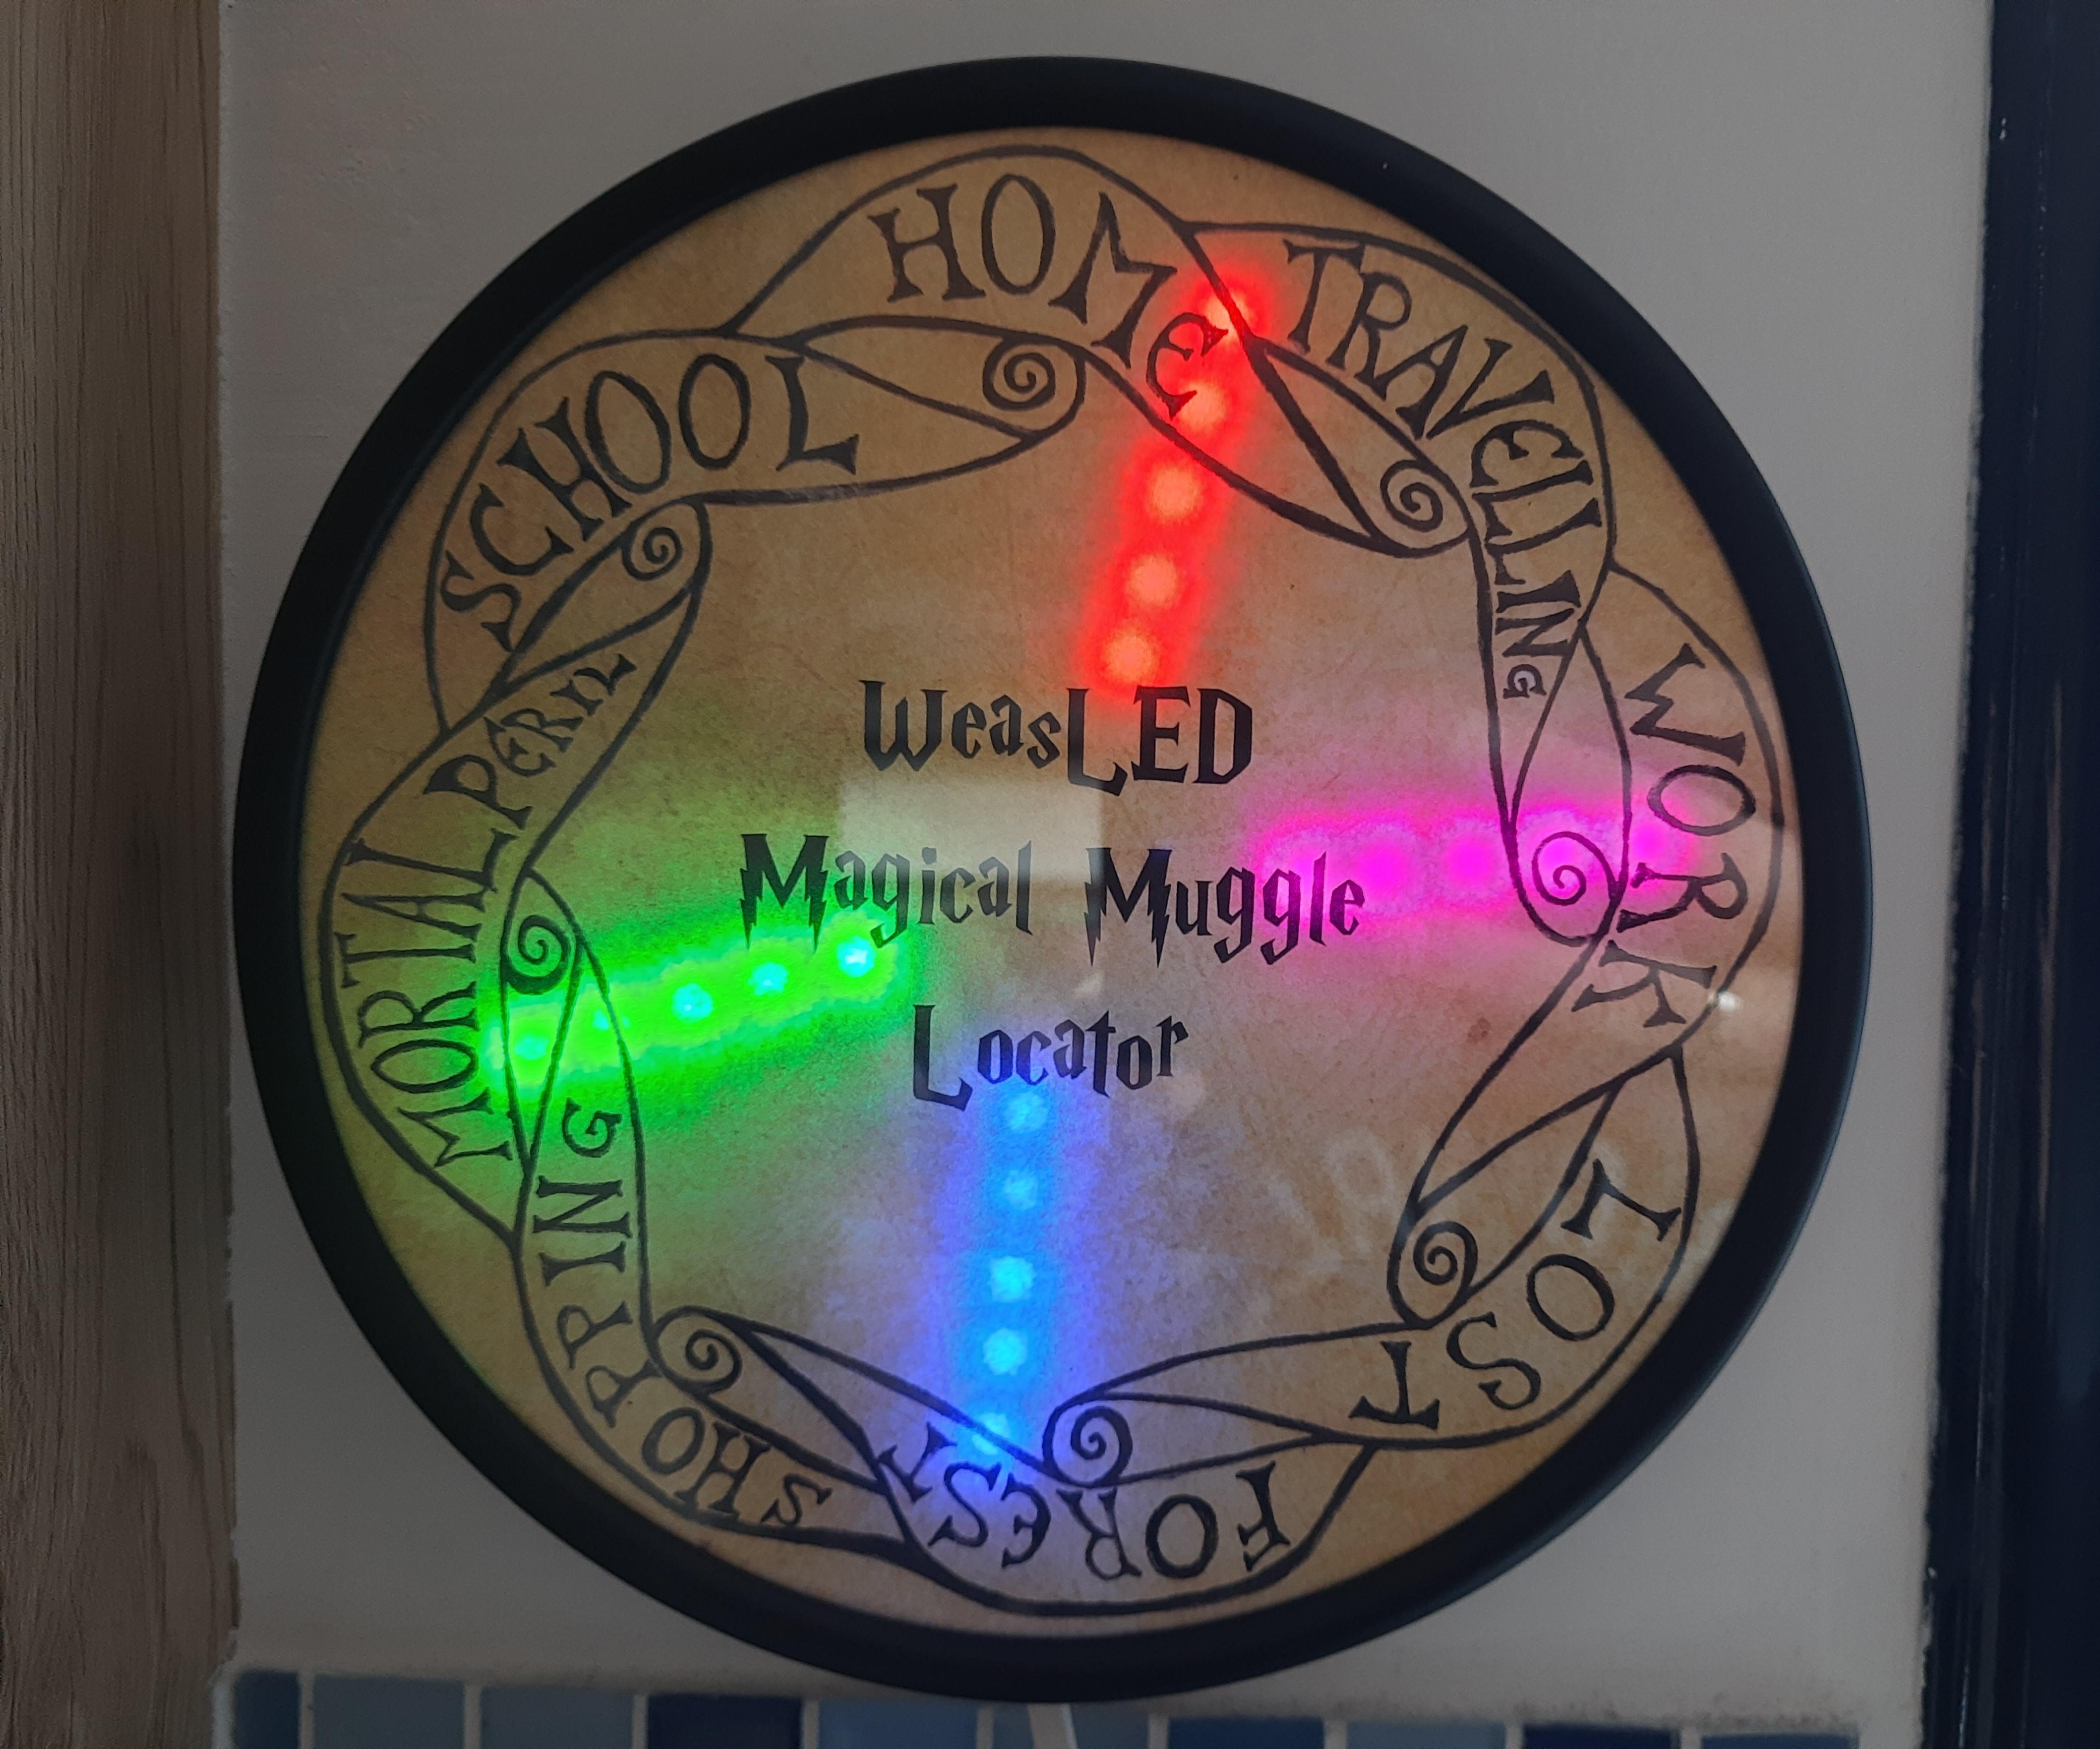 WeasLED Magical Muggle Locator